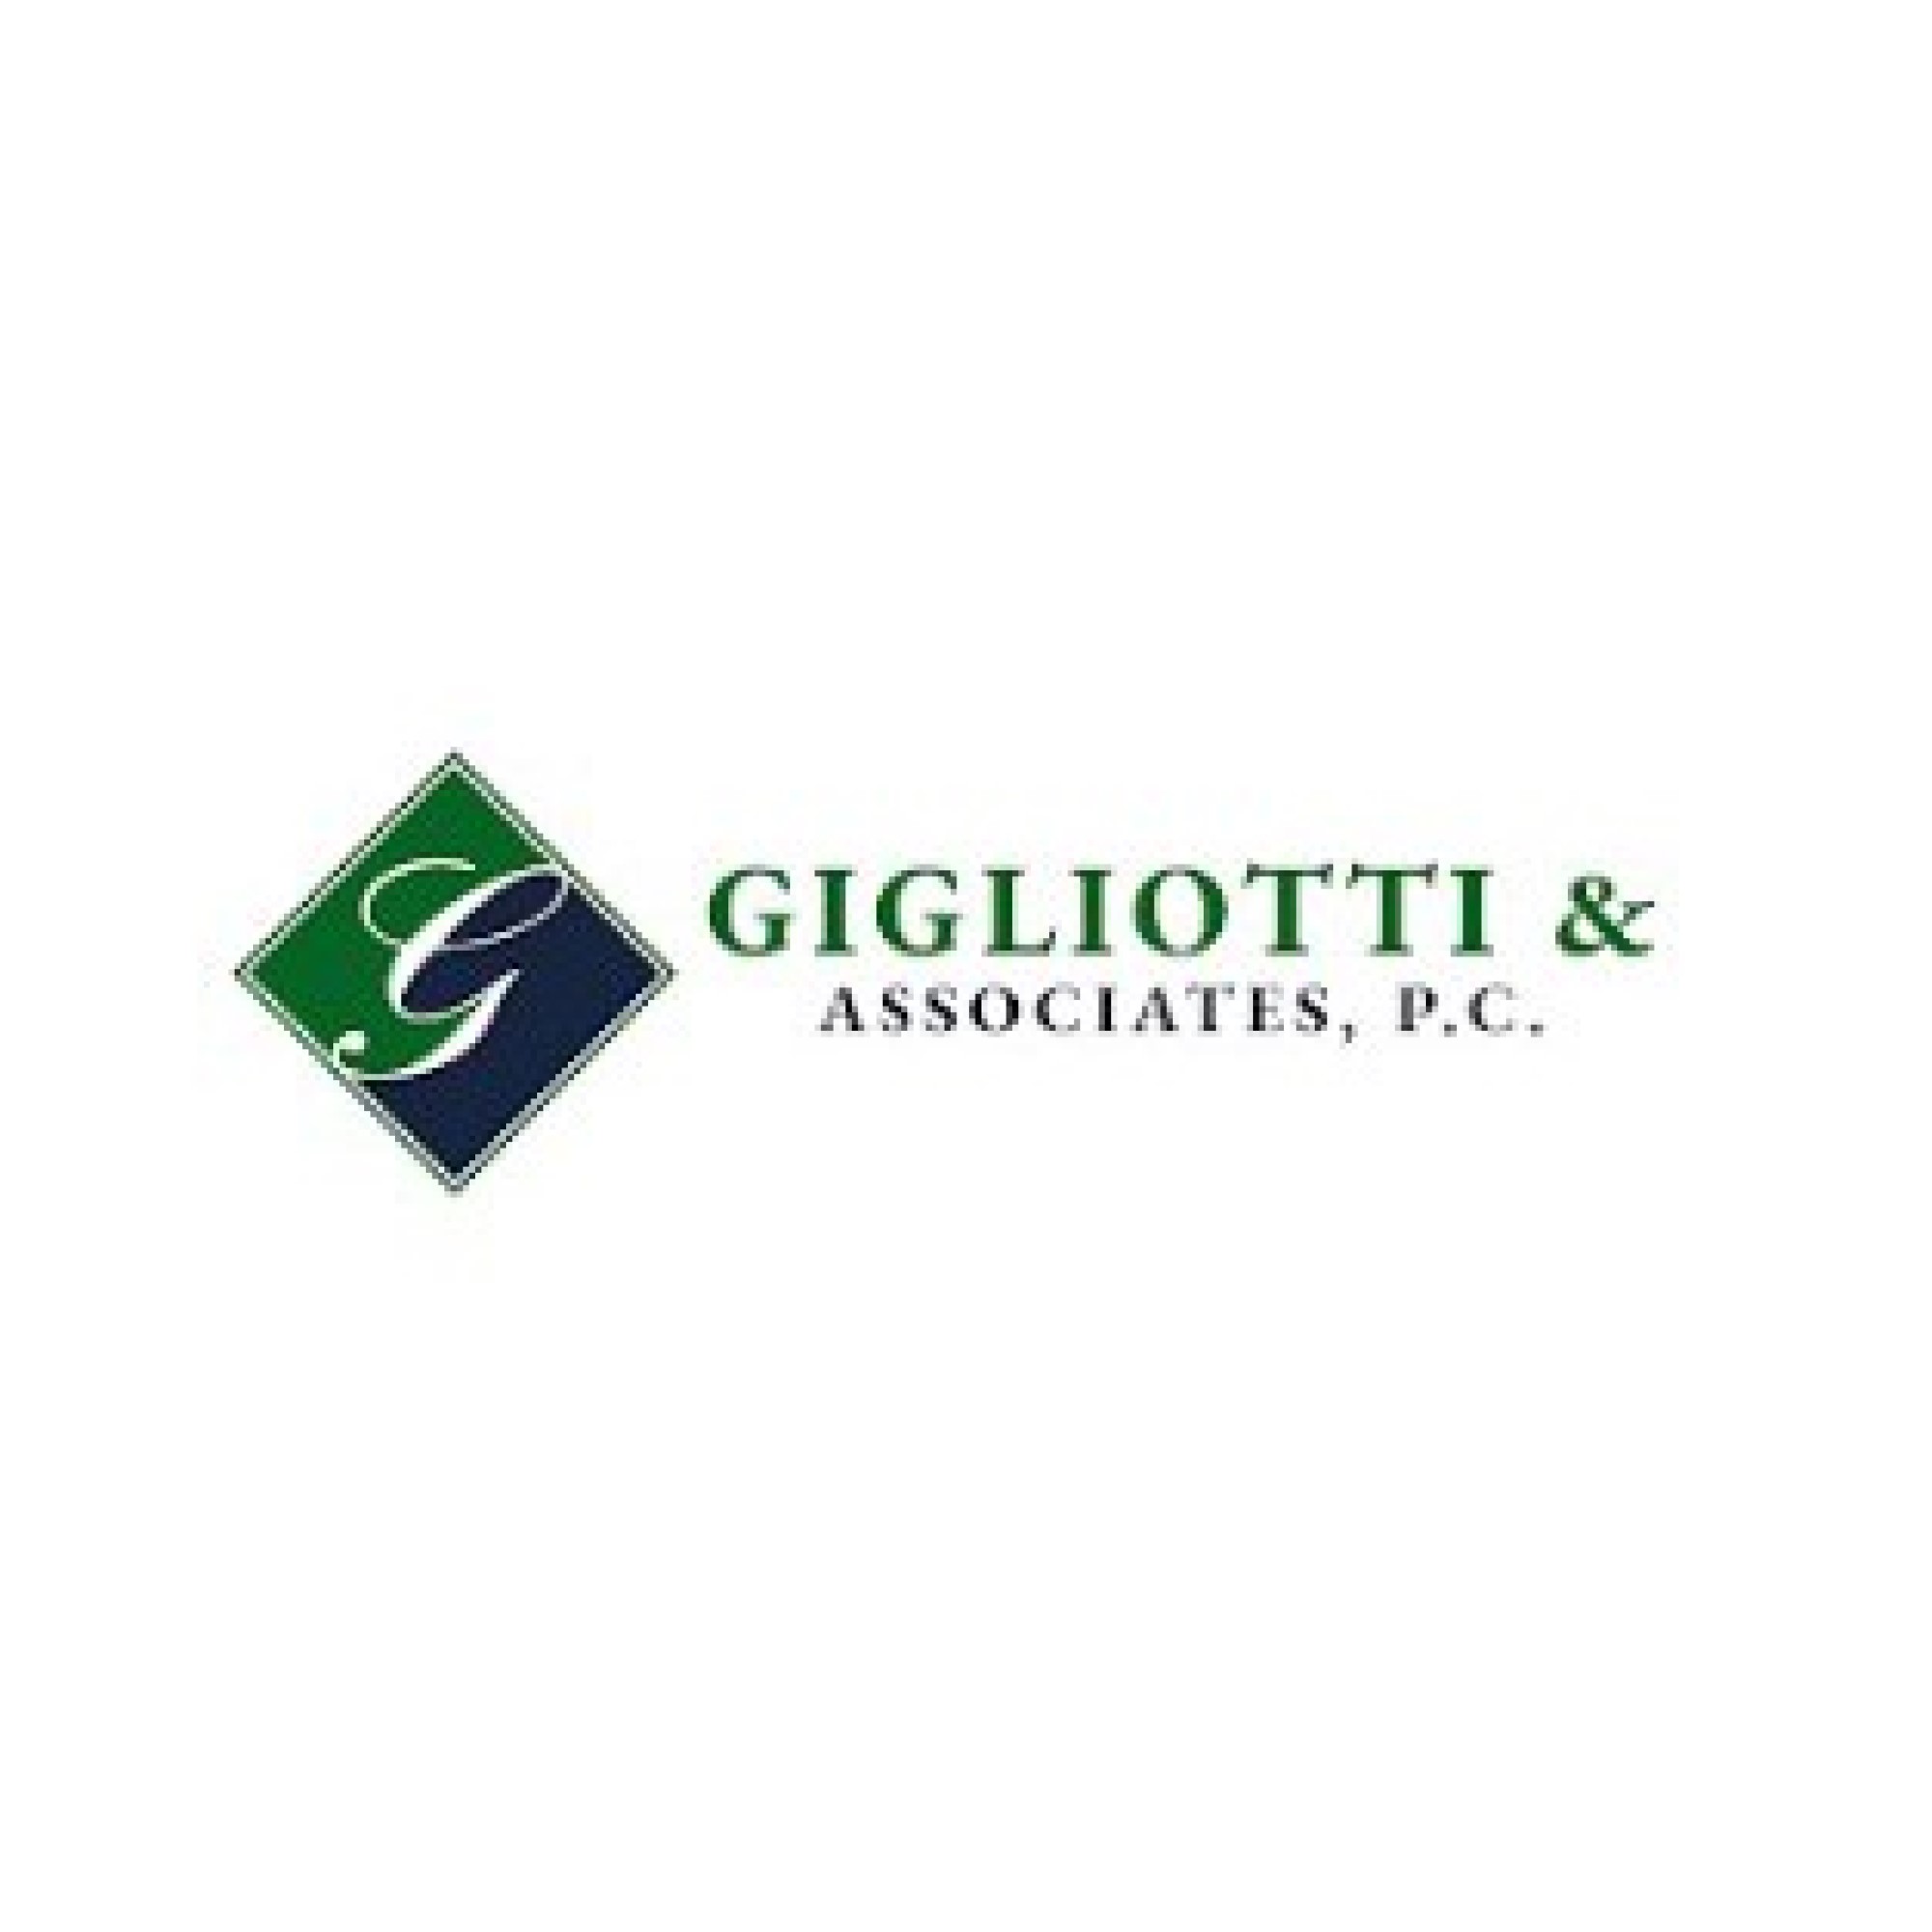 Gigliotti & Associates, P.C.